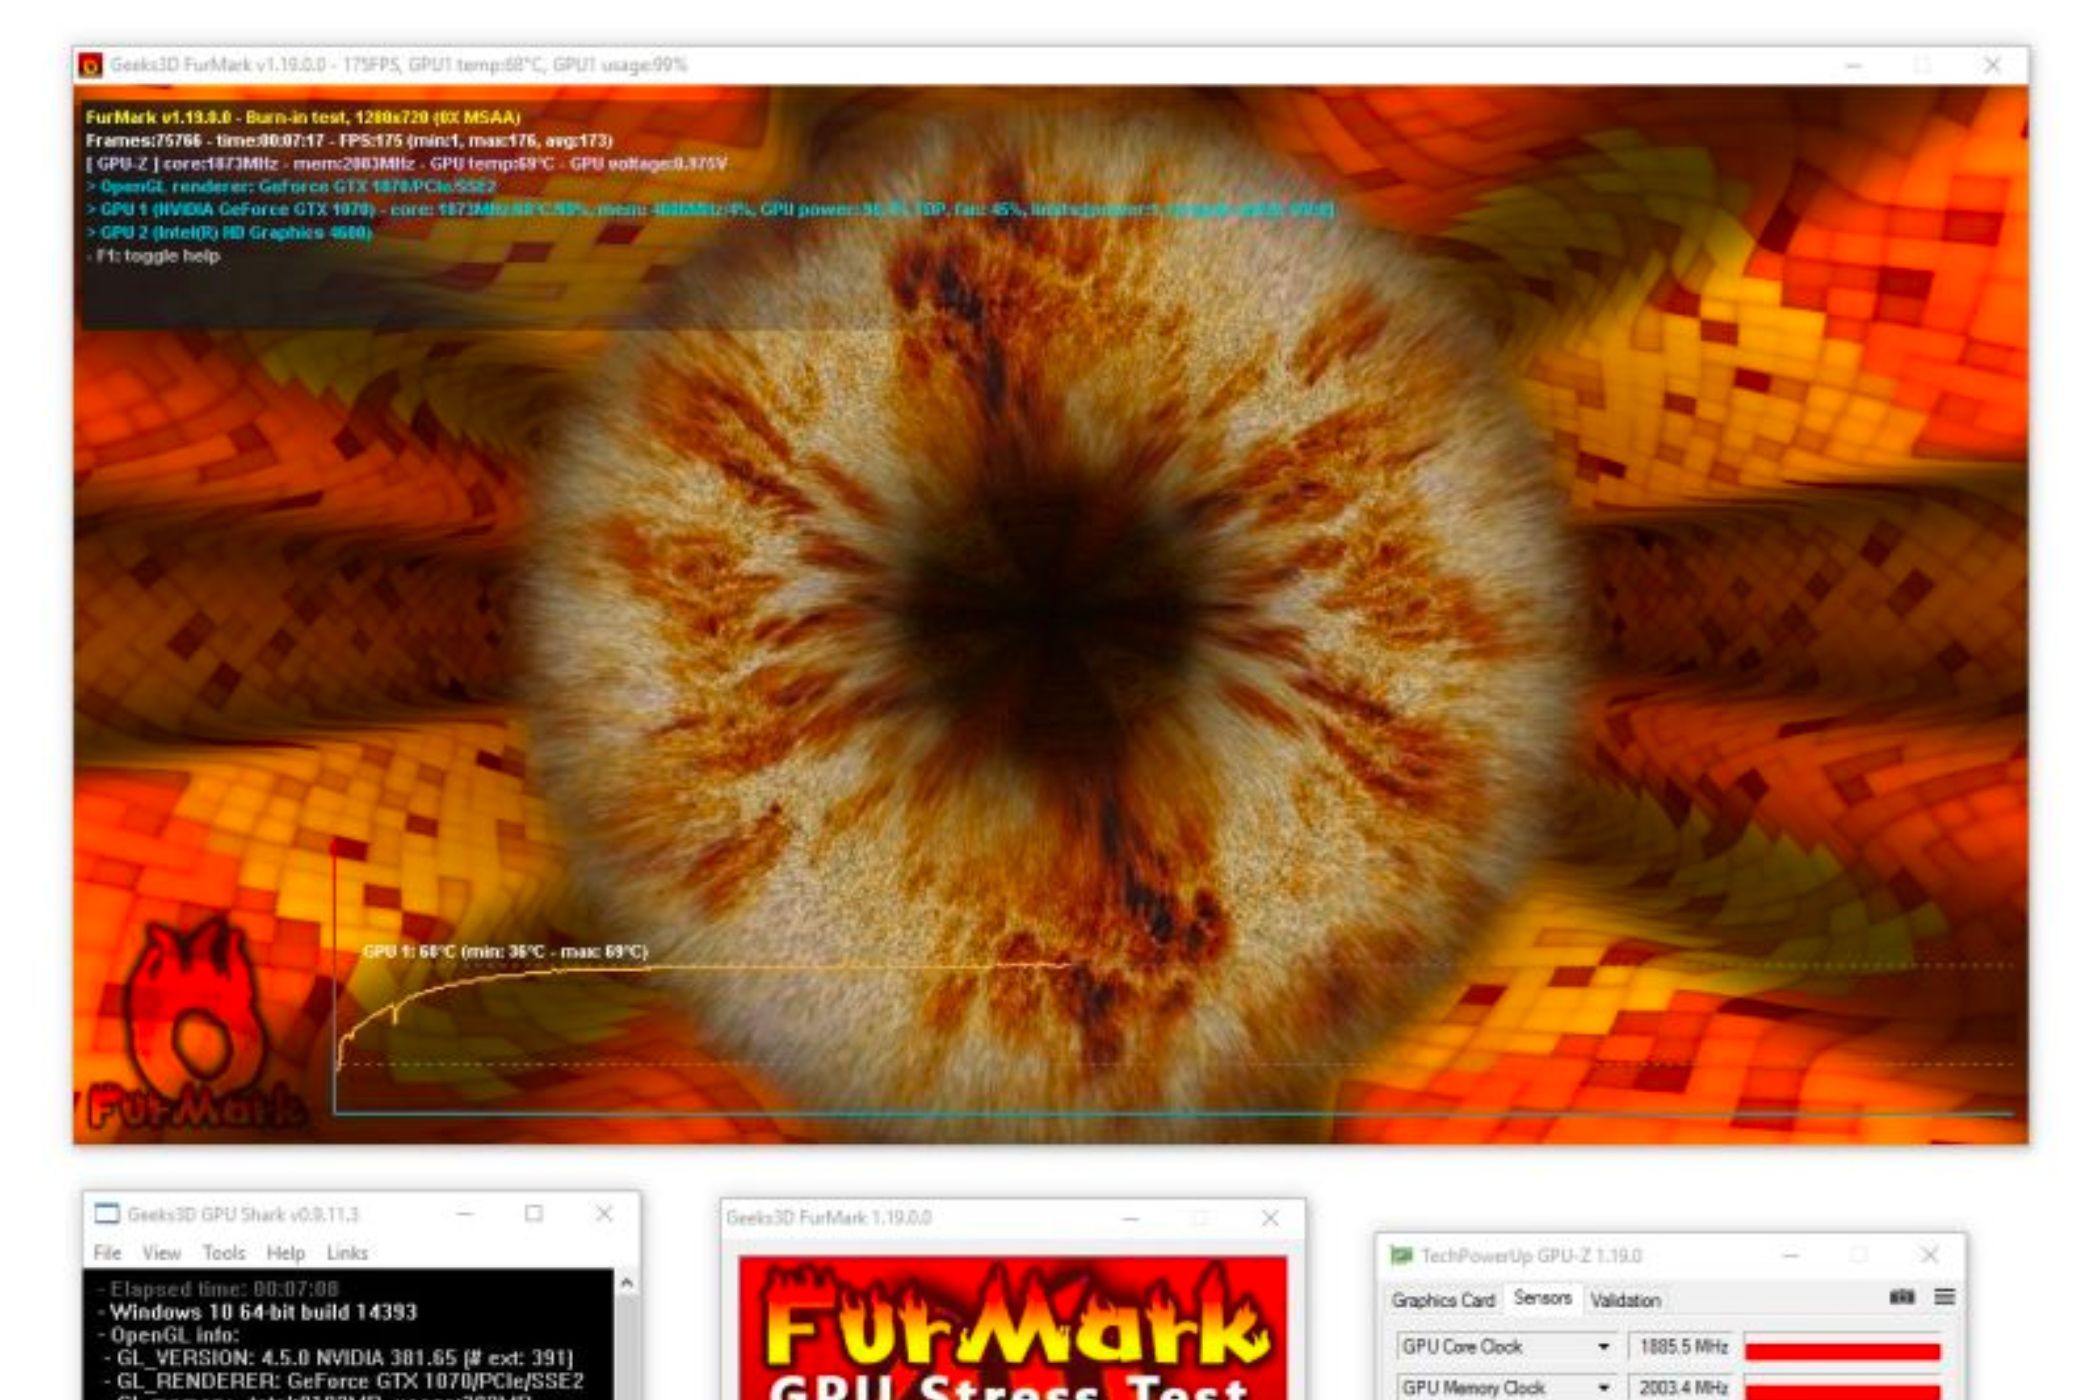 Uma captura de tela mostrando o benchmark FurMark em execução.